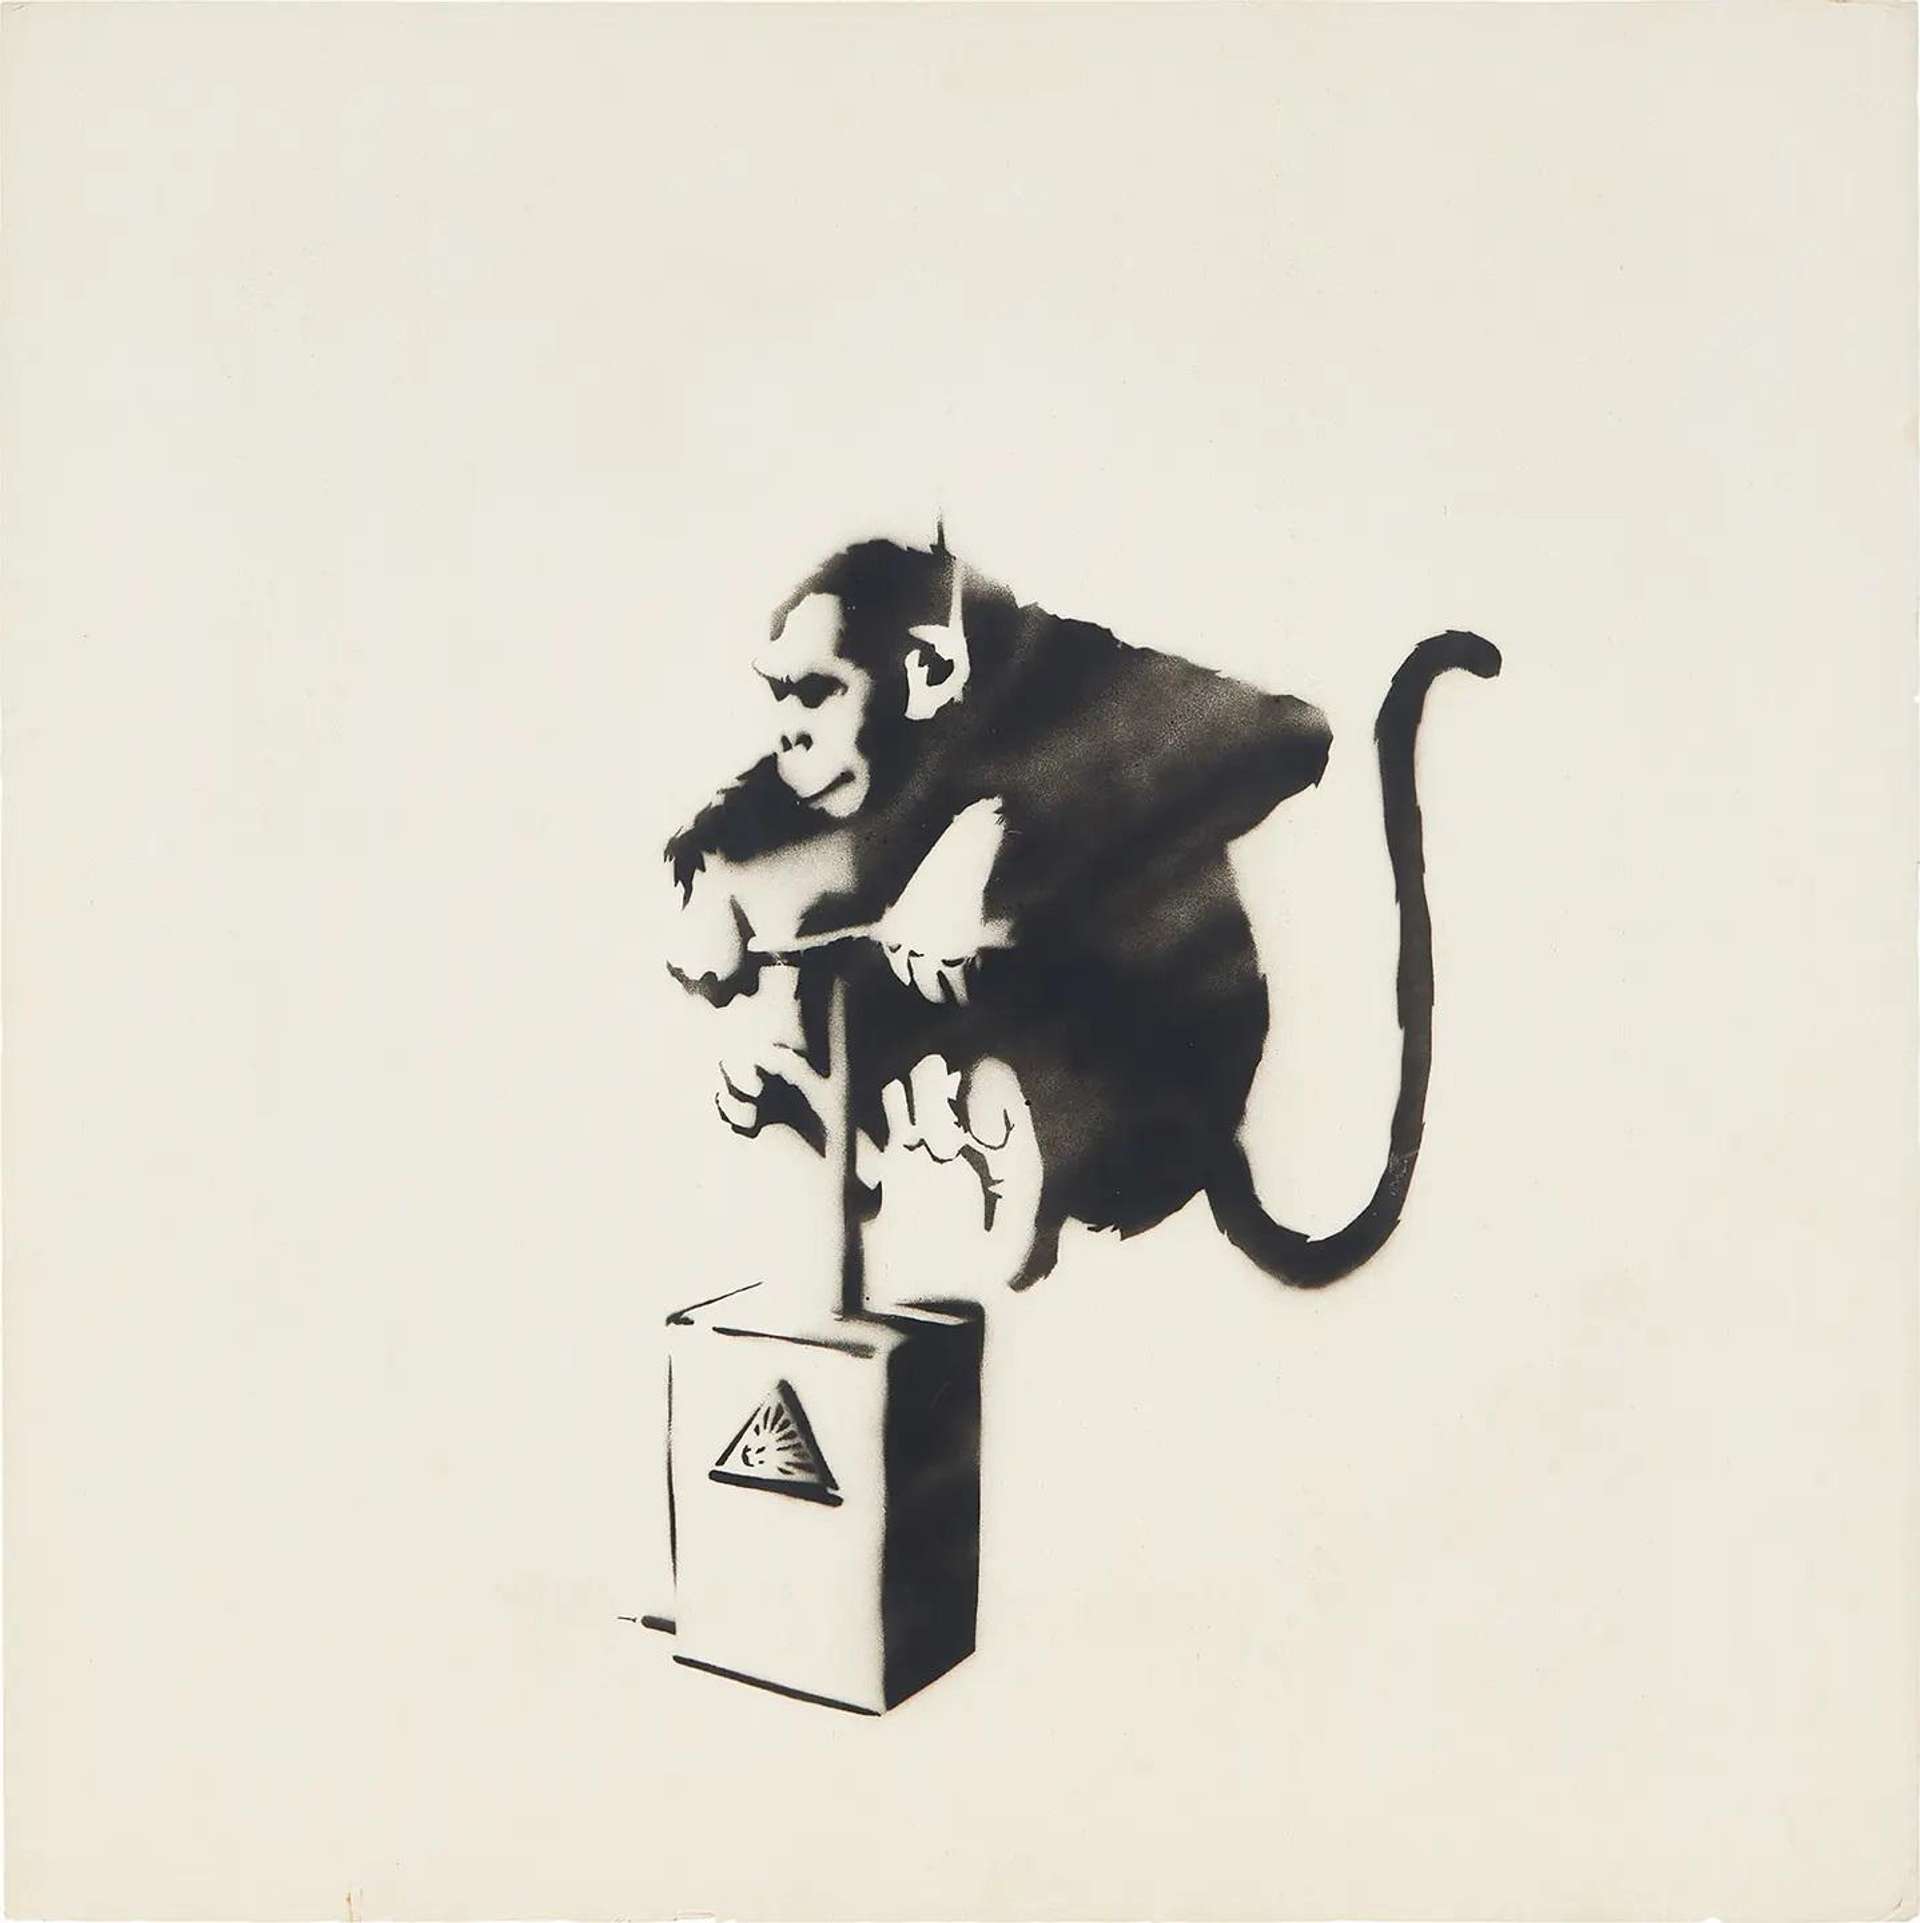 Monkey Detonator by Banksy